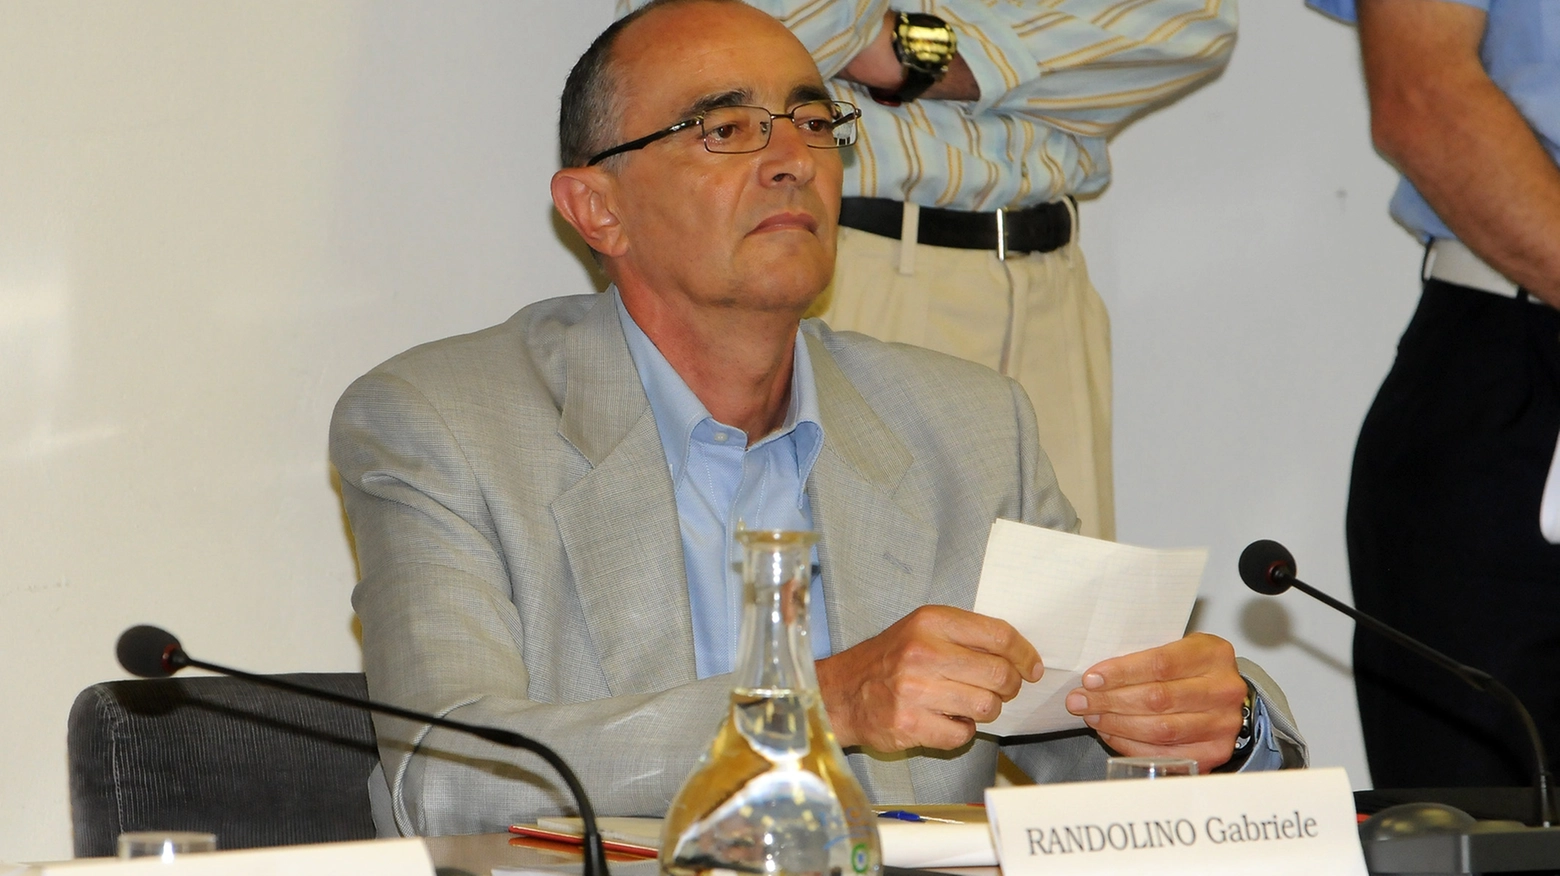 Gabriele Randolino